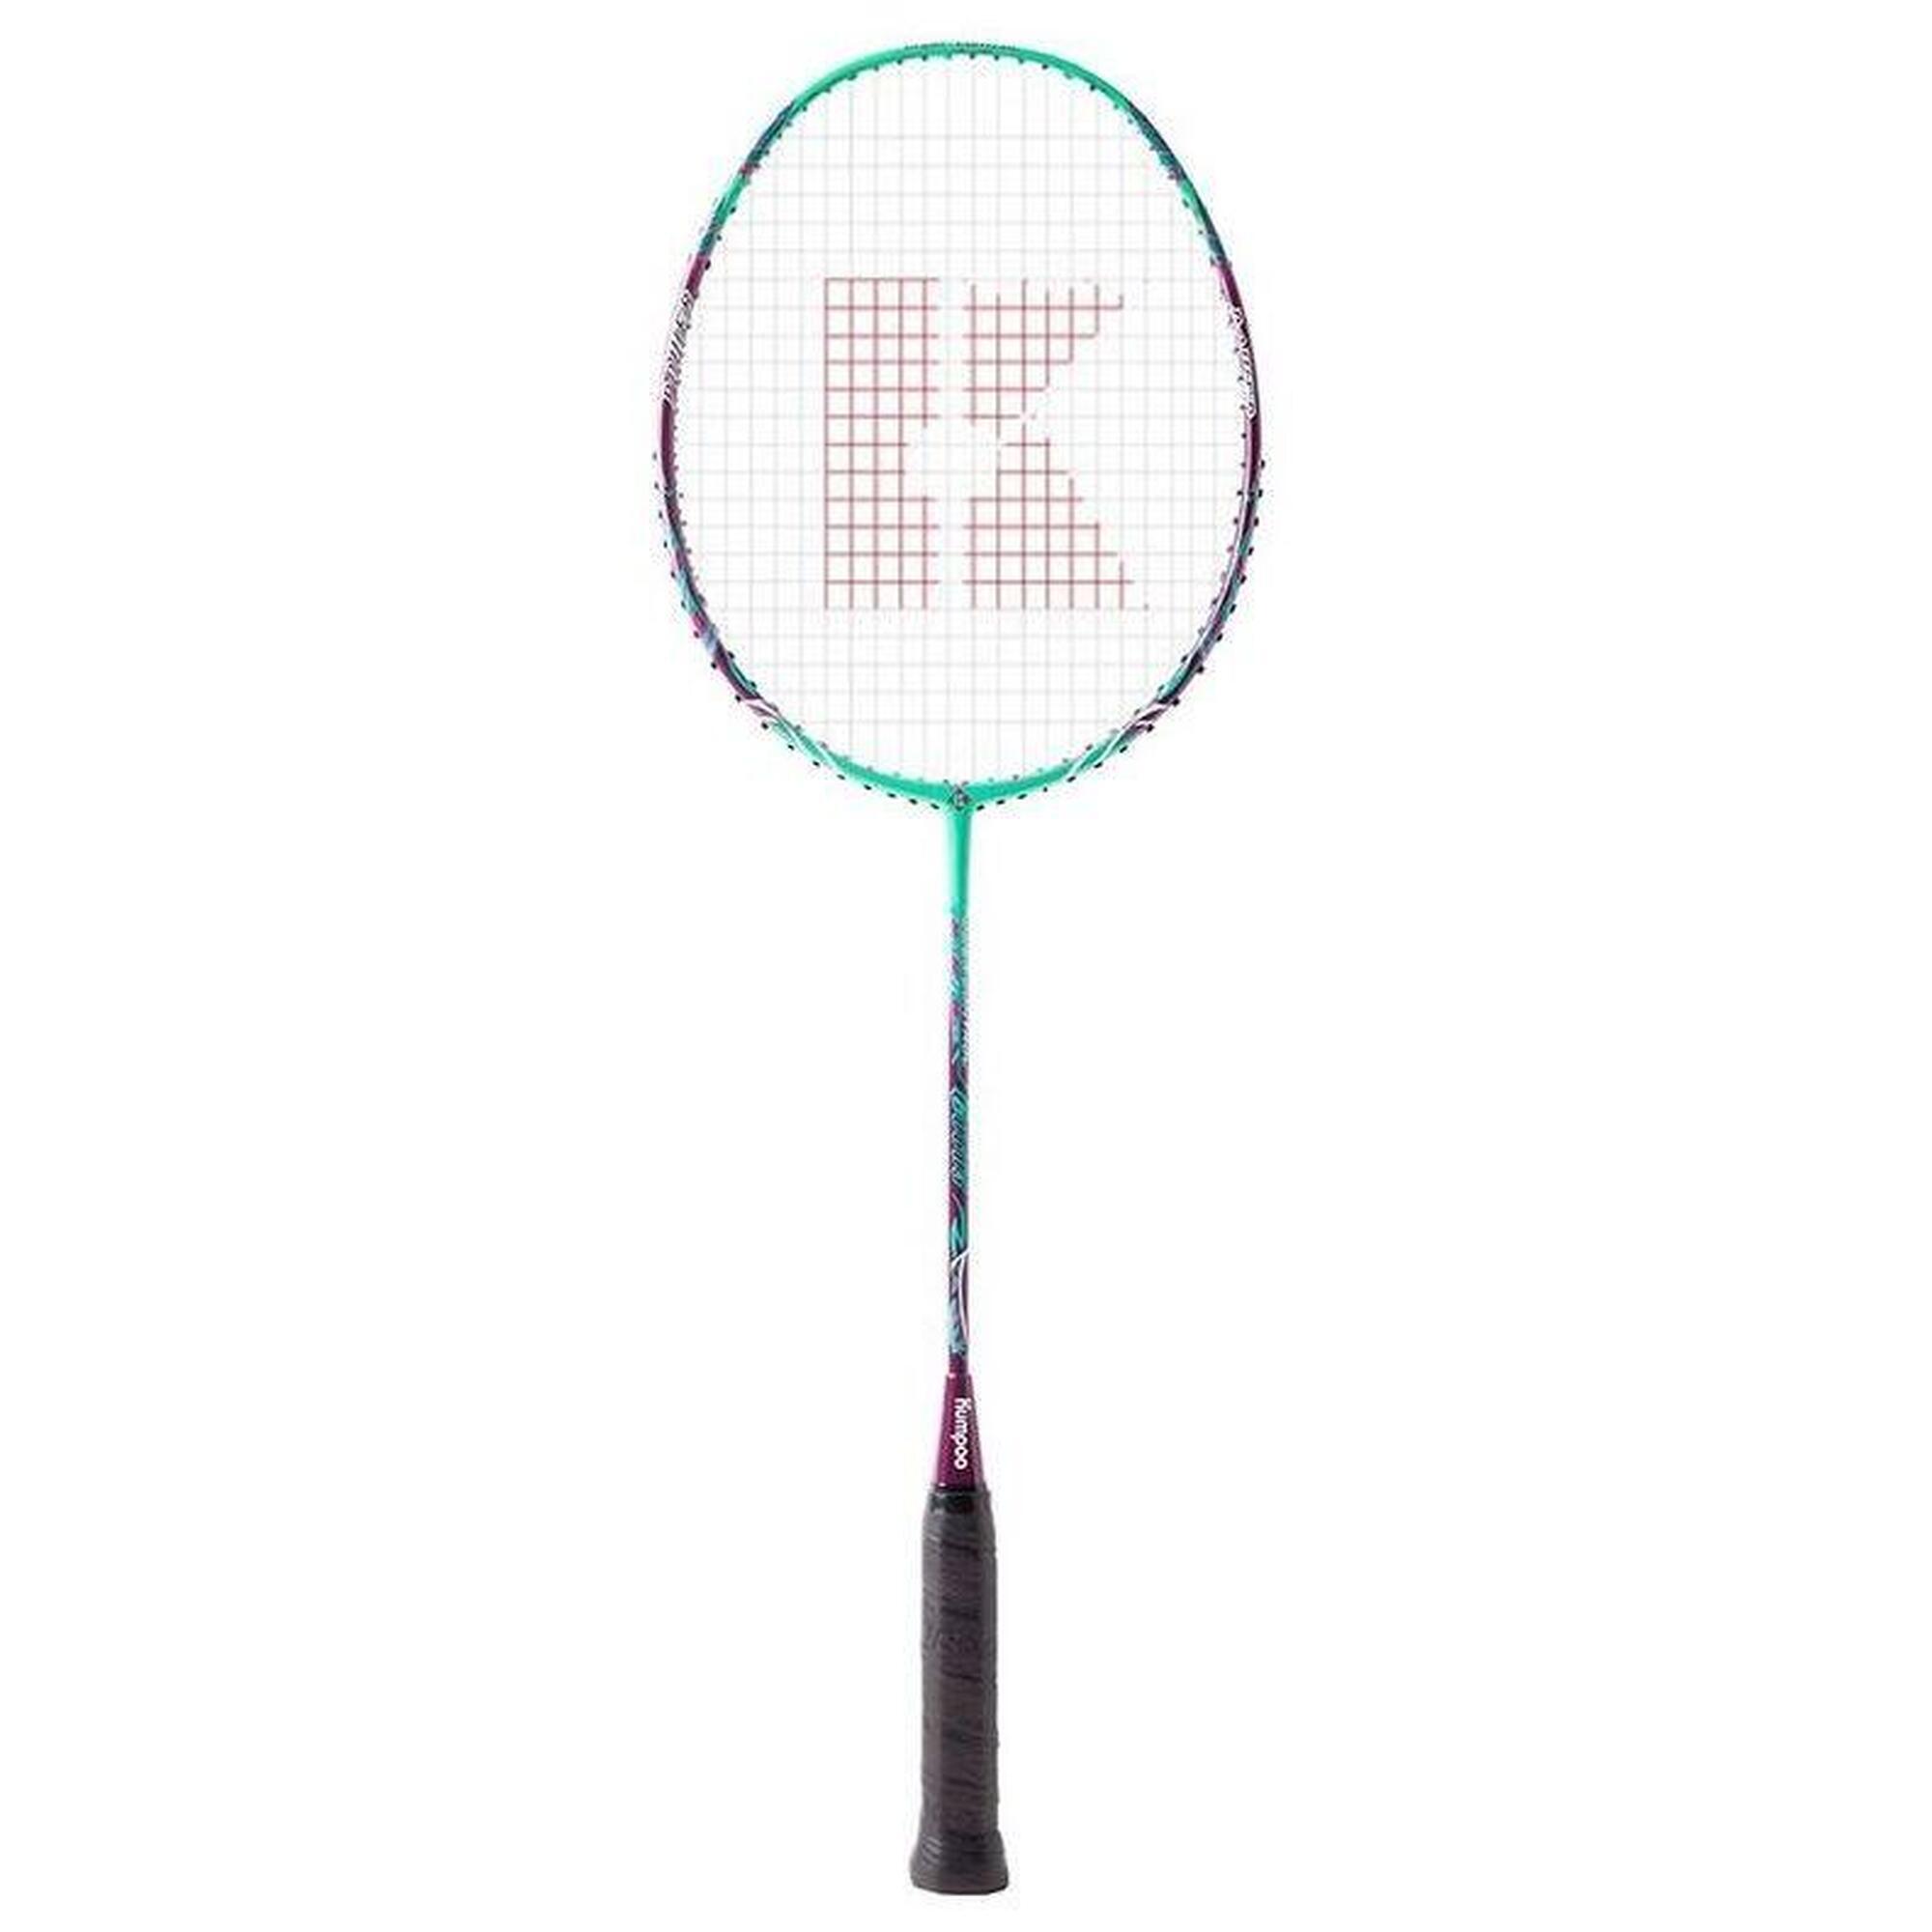 C-0603 Children's Badminton Racket with Racket Bag - Green